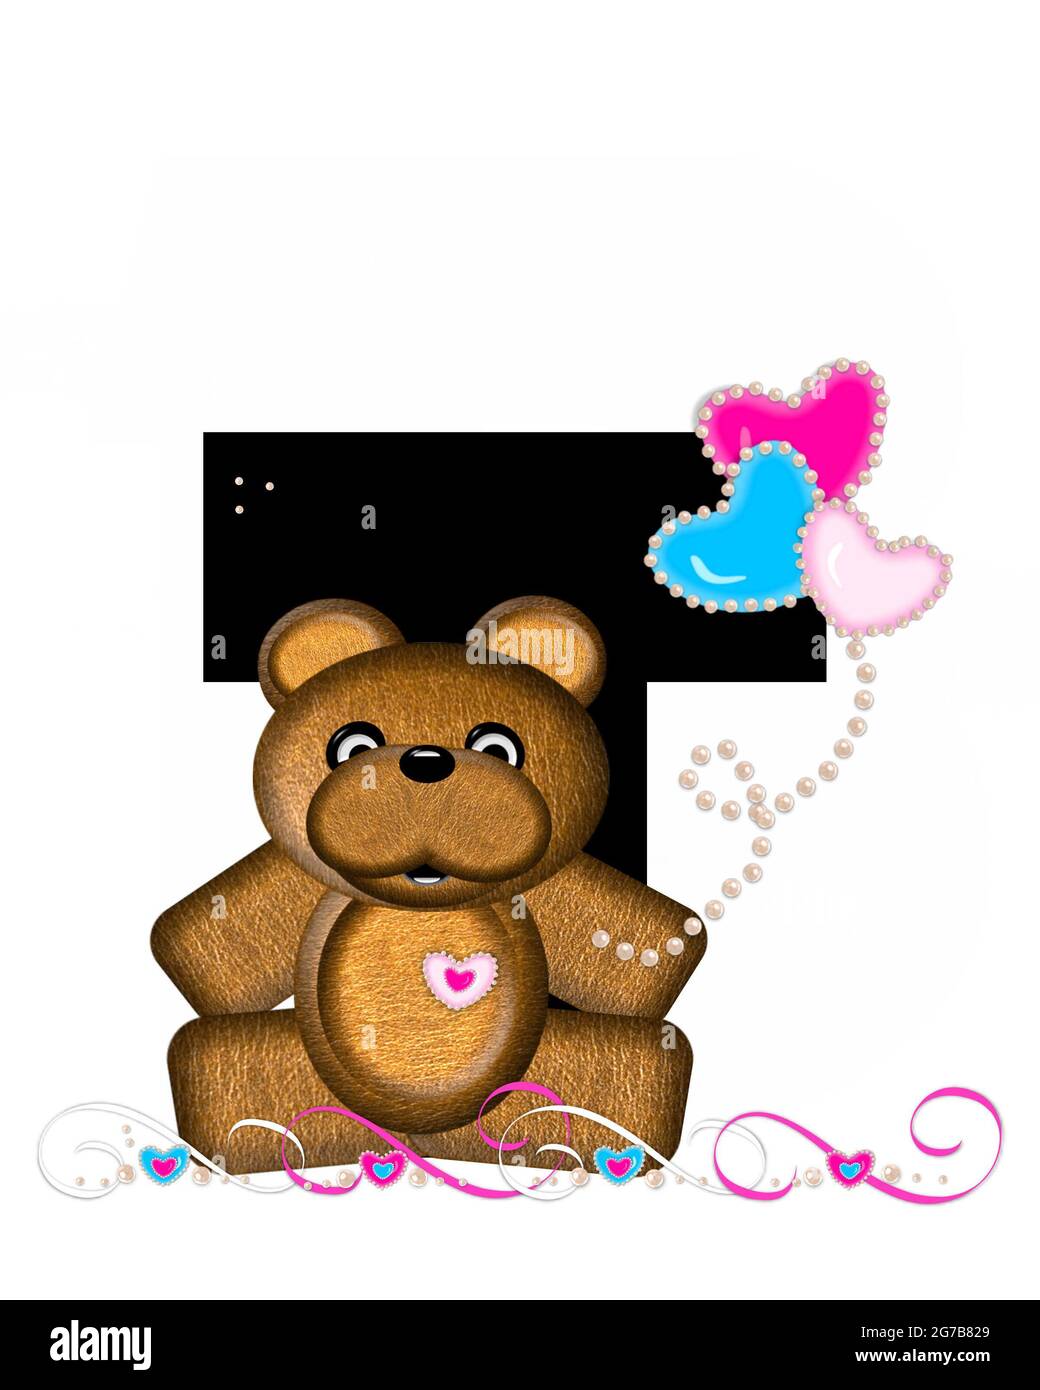 Der Buchstabe T im Alphabetsatz „Teddy Valentine's Cutie“ ist schwarz. Brauner Teddybär hält herzförmige Ballons in rosa und blau. Birnenkette Stockfoto